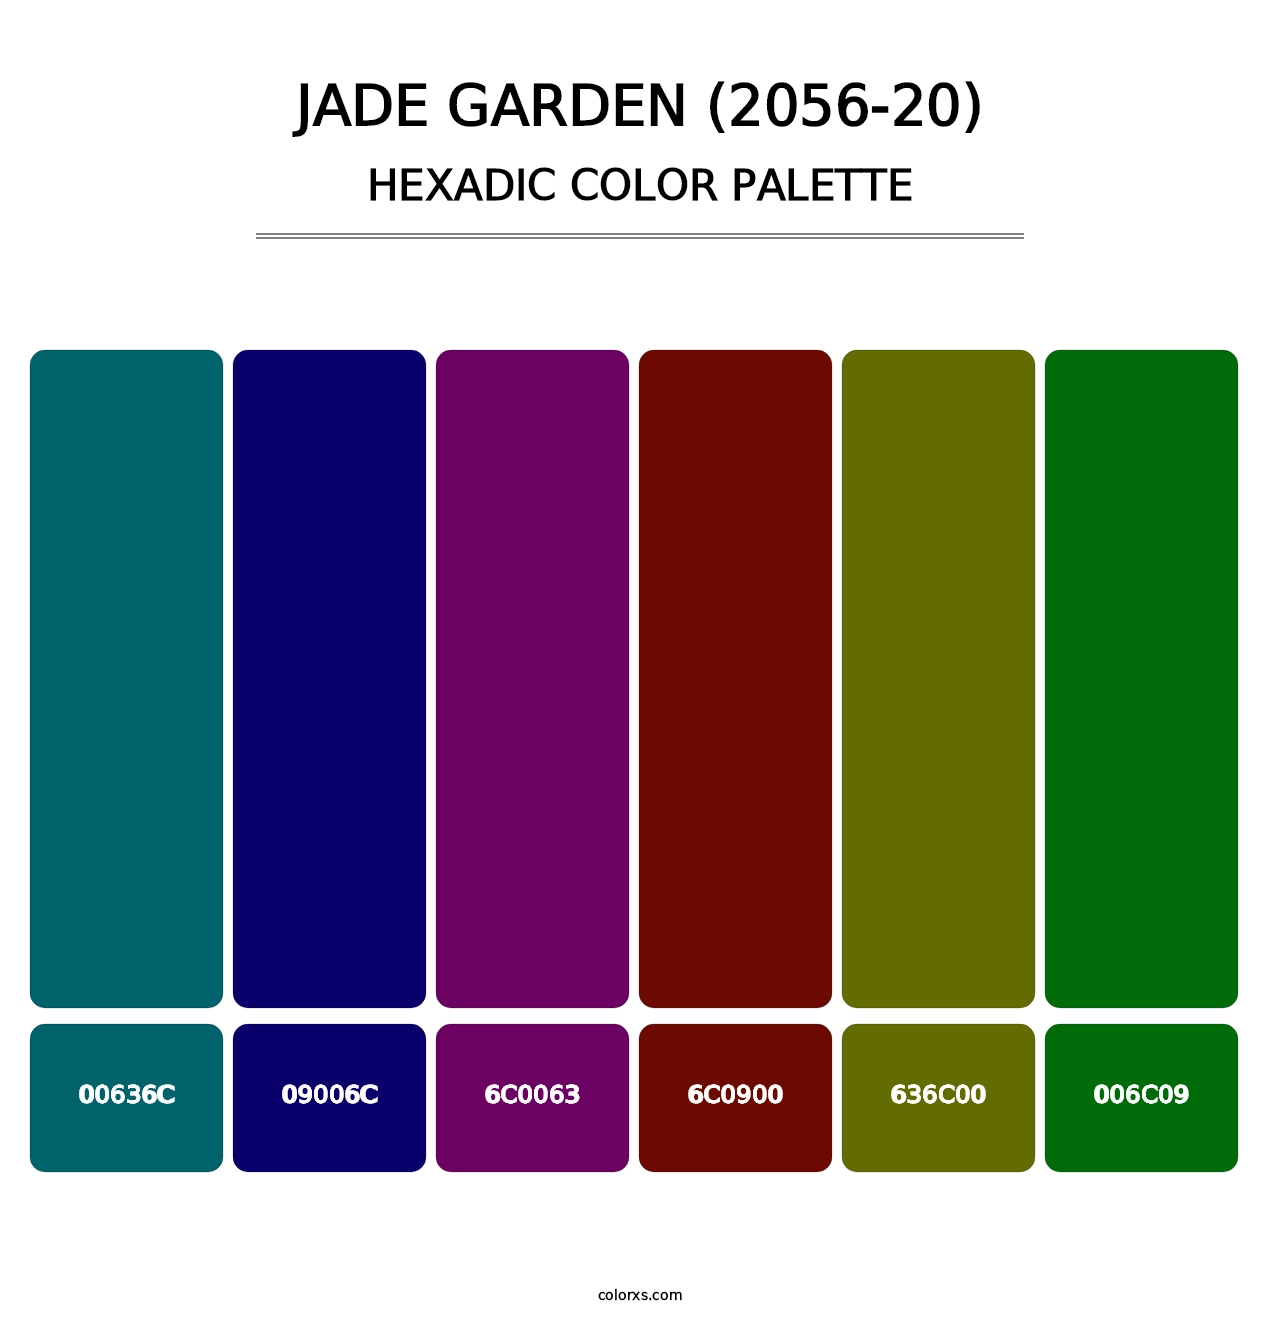 Jade Garden (2056-20) - Hexadic Color Palette